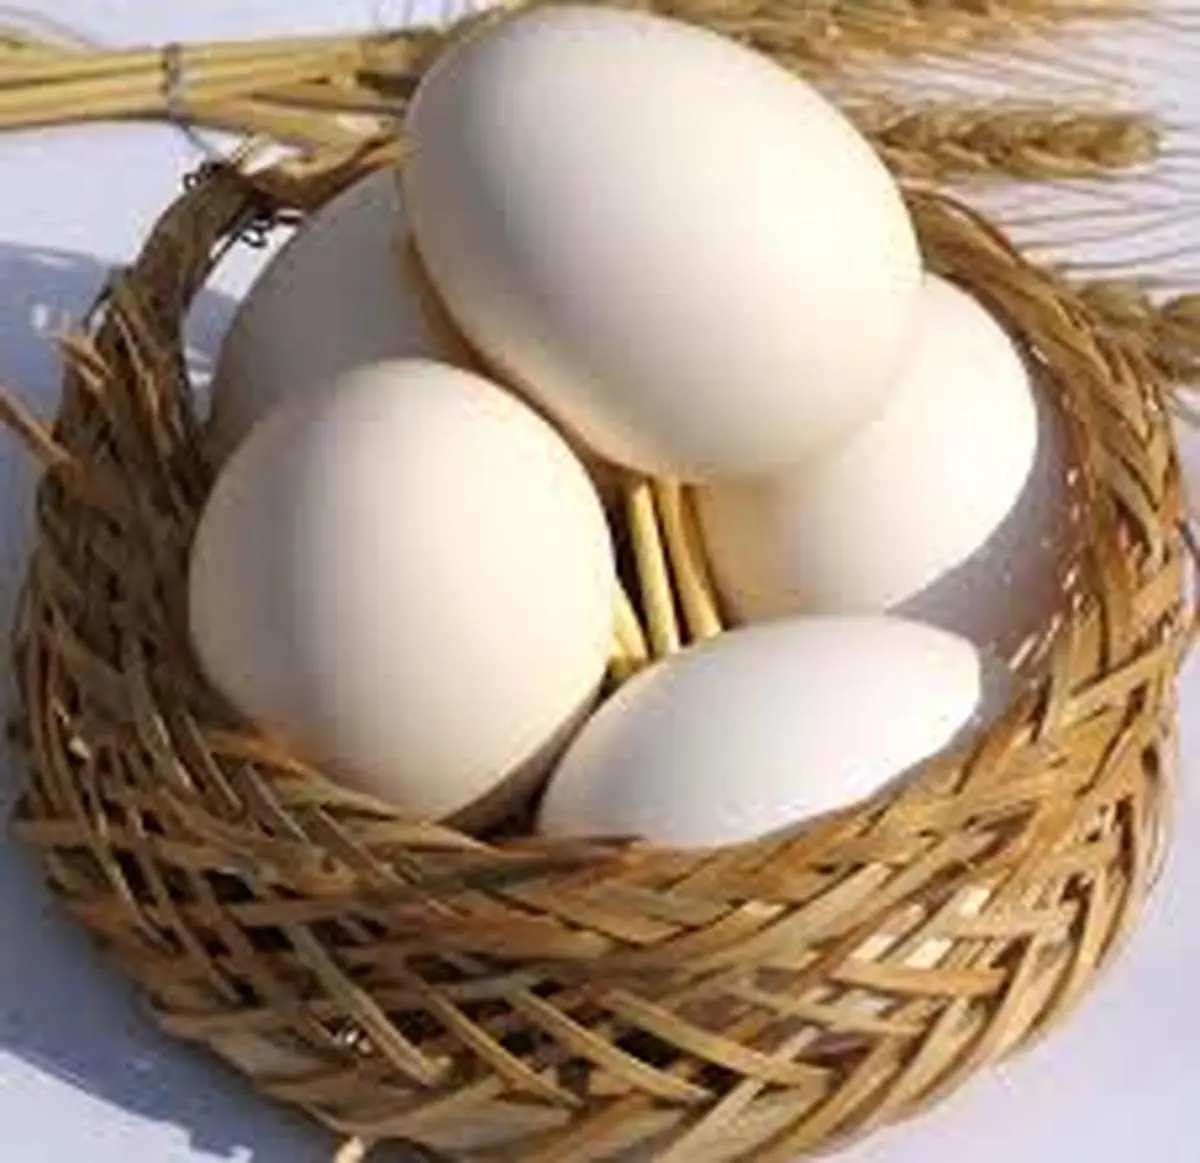  علت اصلی افزایش قیمت تخم مرغ مشخص شد .